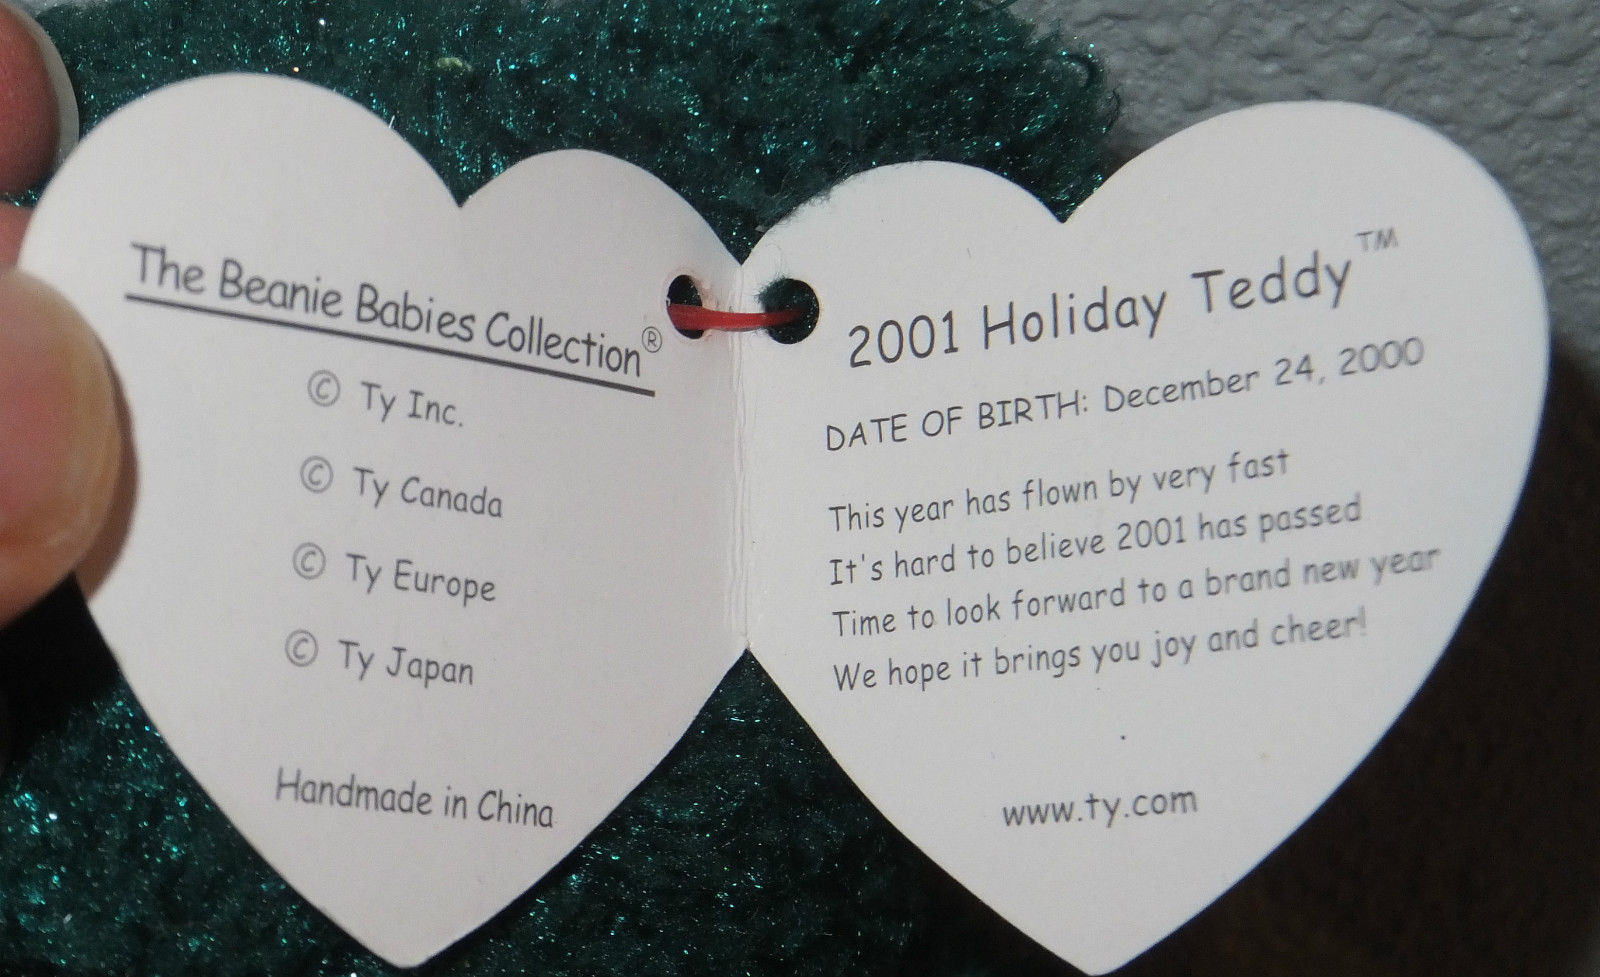 2001 holiday teddy beanie baby worth